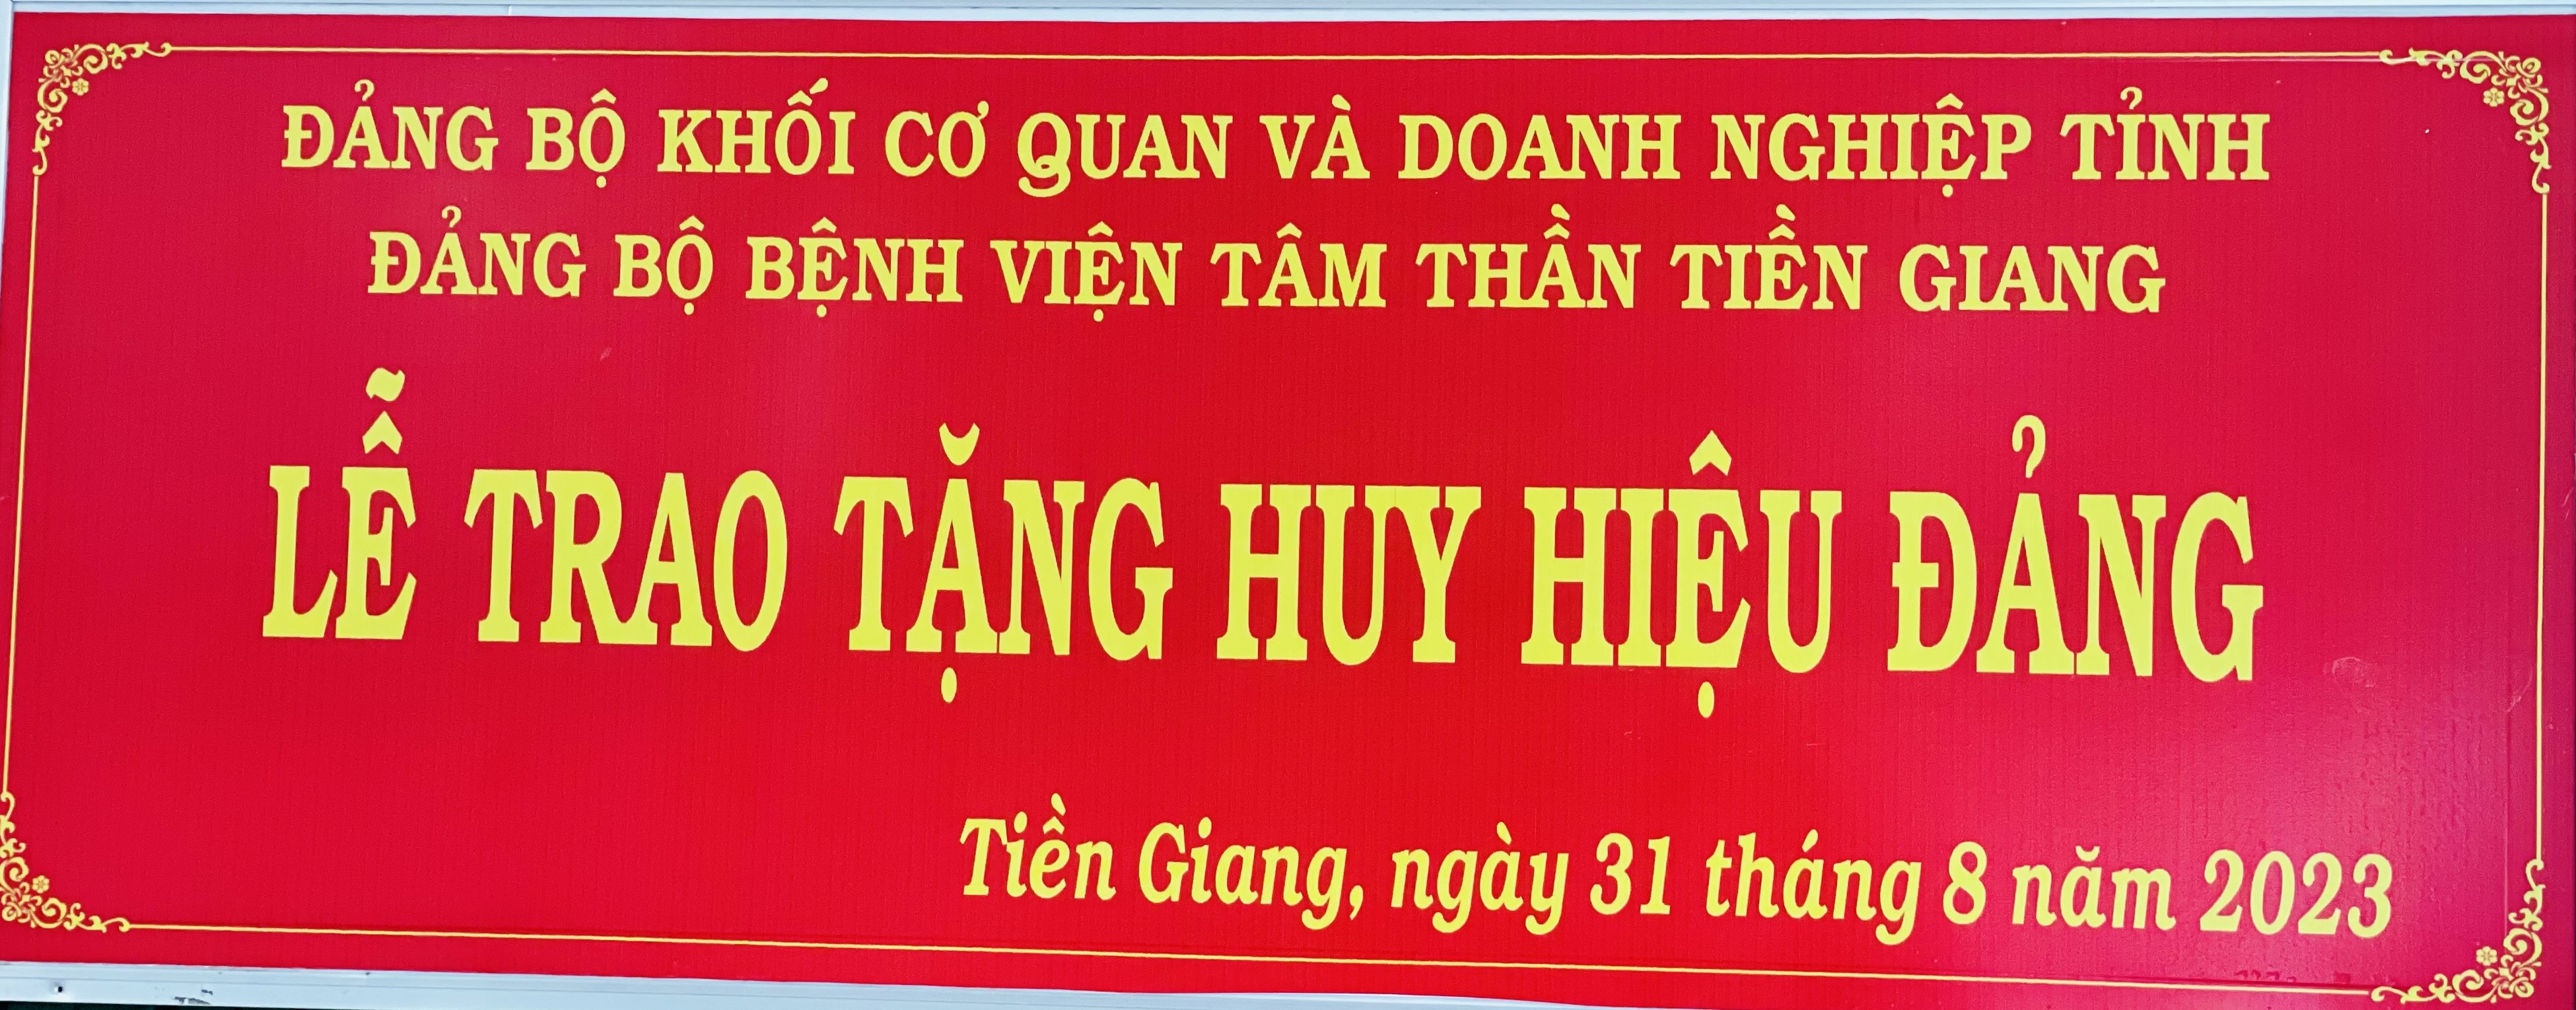 Đảng bộ Bệnh viện Tâm thần tổ chức lể trao huy hiệu 30 năm tuổi đảng cho đảng viên Nguyễn Văn Sơn đợt 2/9